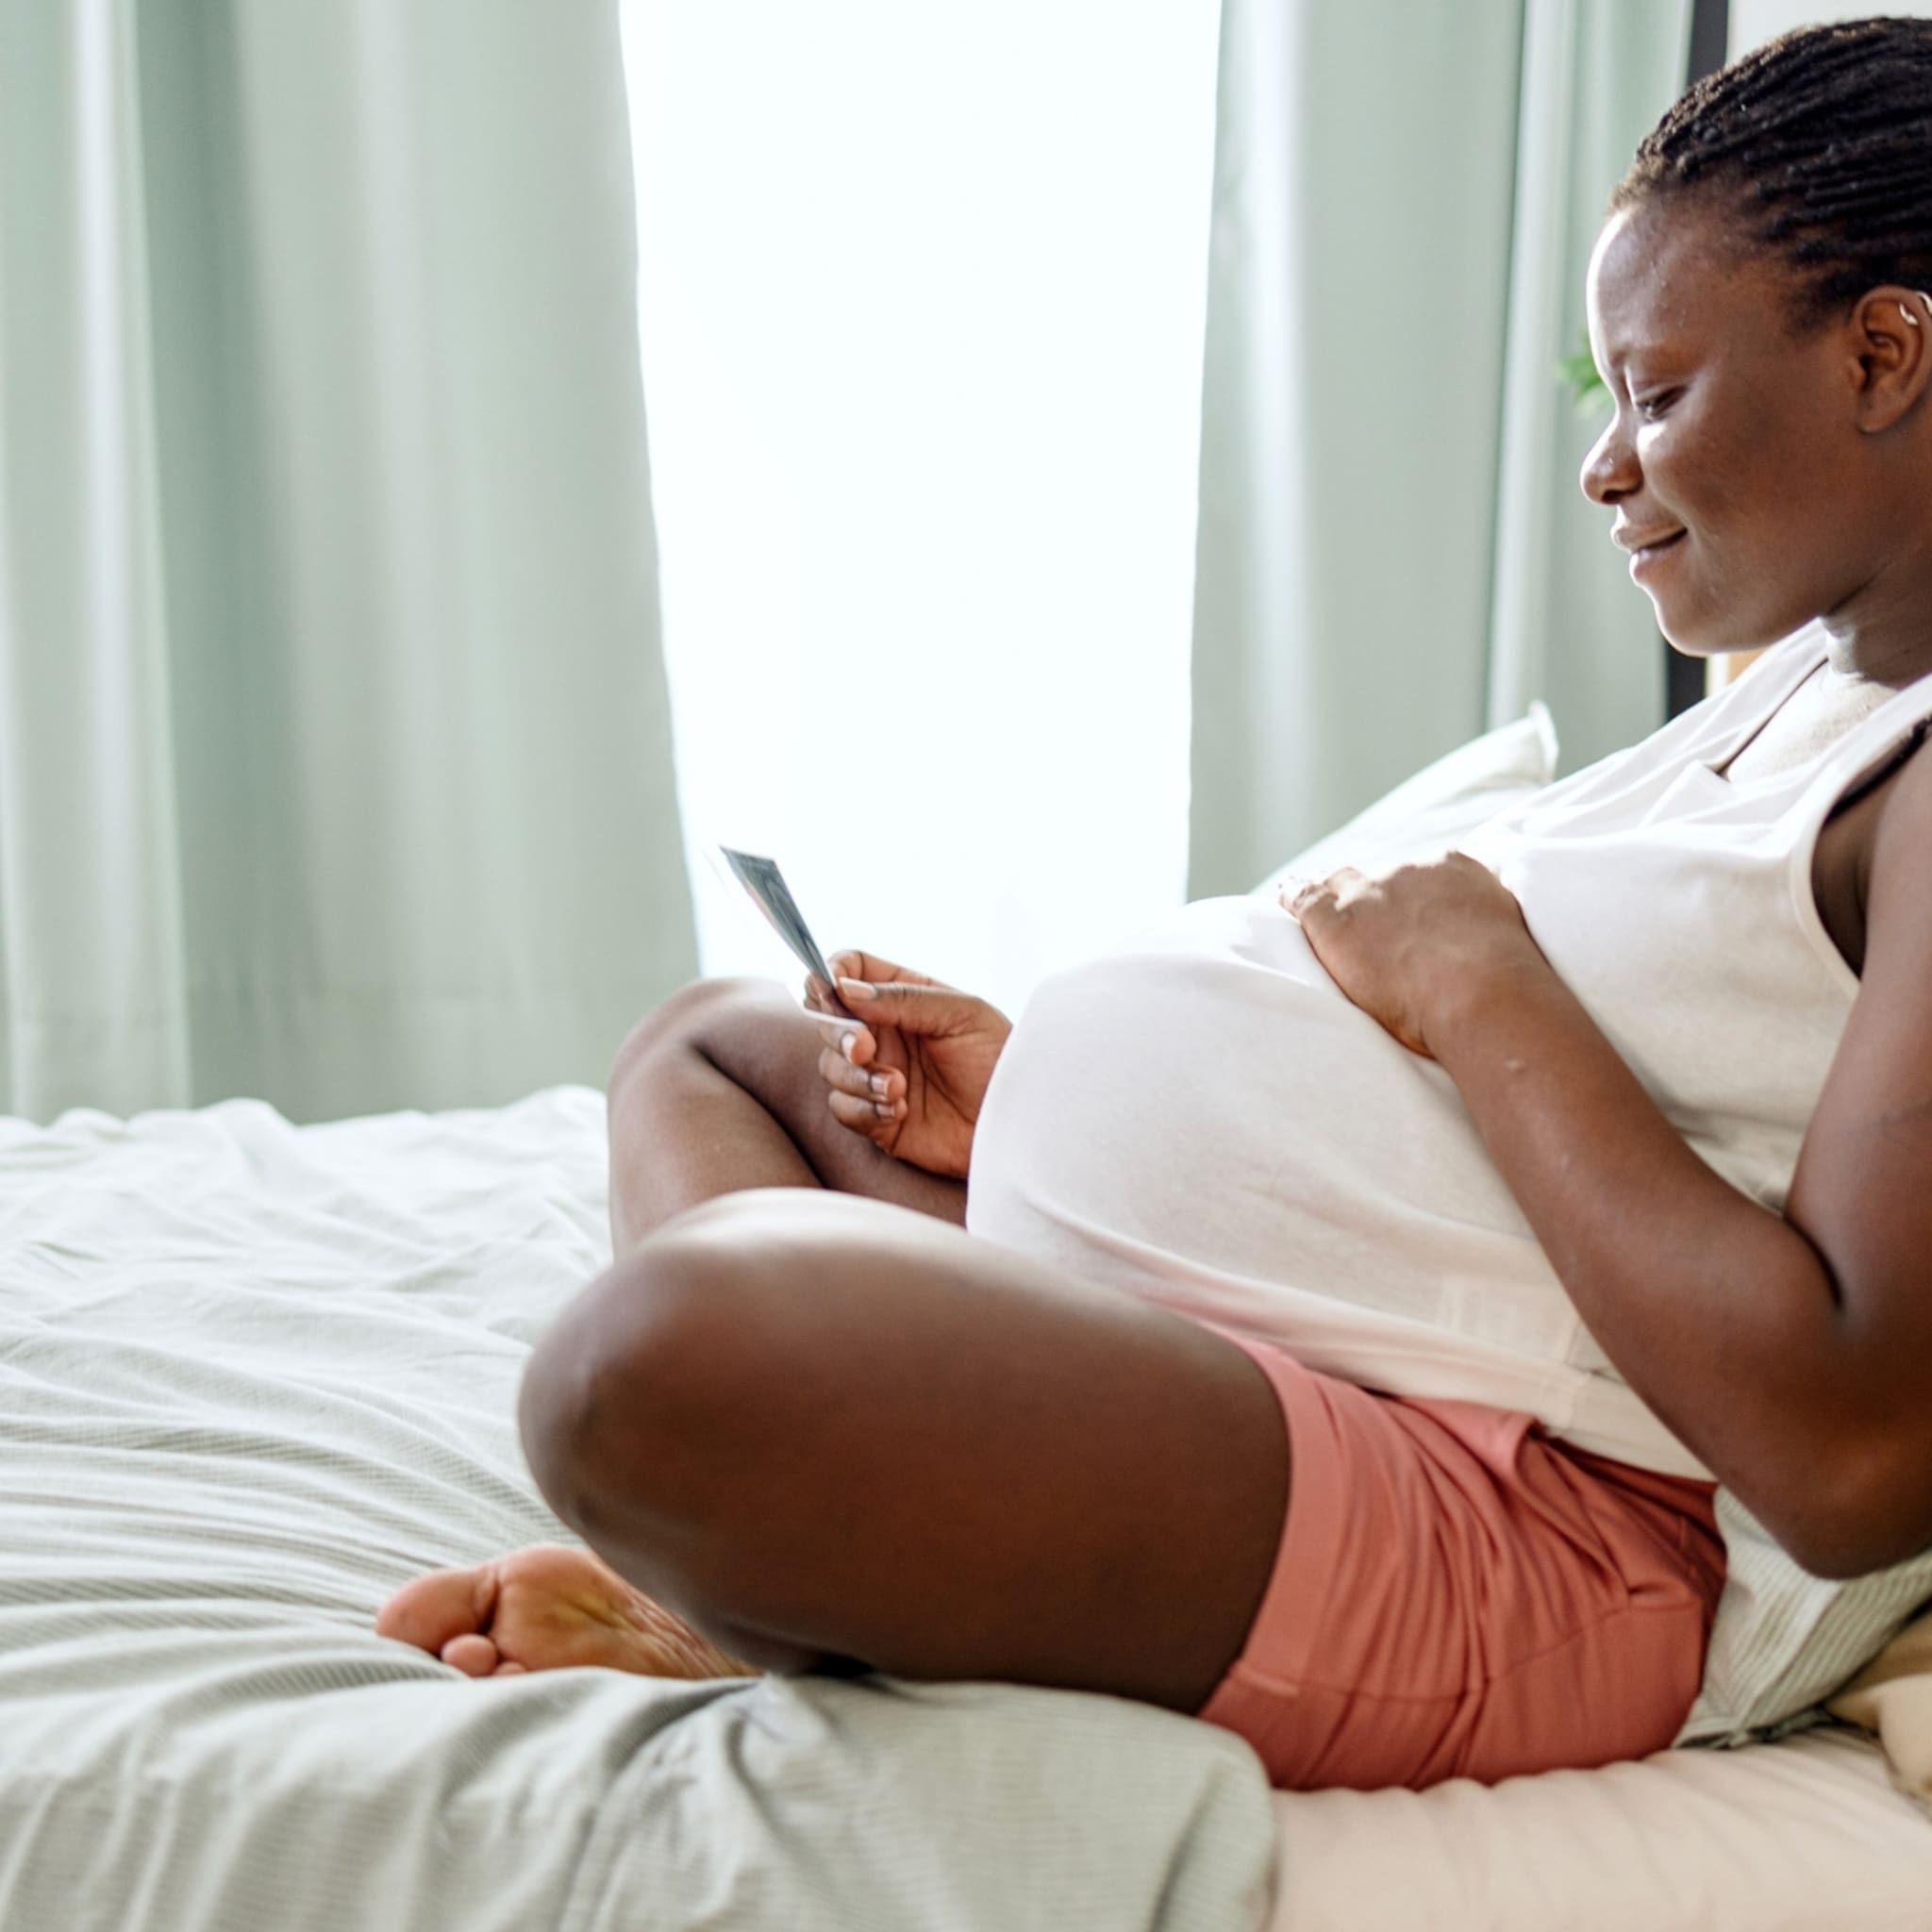 verloskundige-goodarzi-onderzoekt-waarom-zwangeren-en-baby-s-van-kleur-slechtere-zorg-krijgen